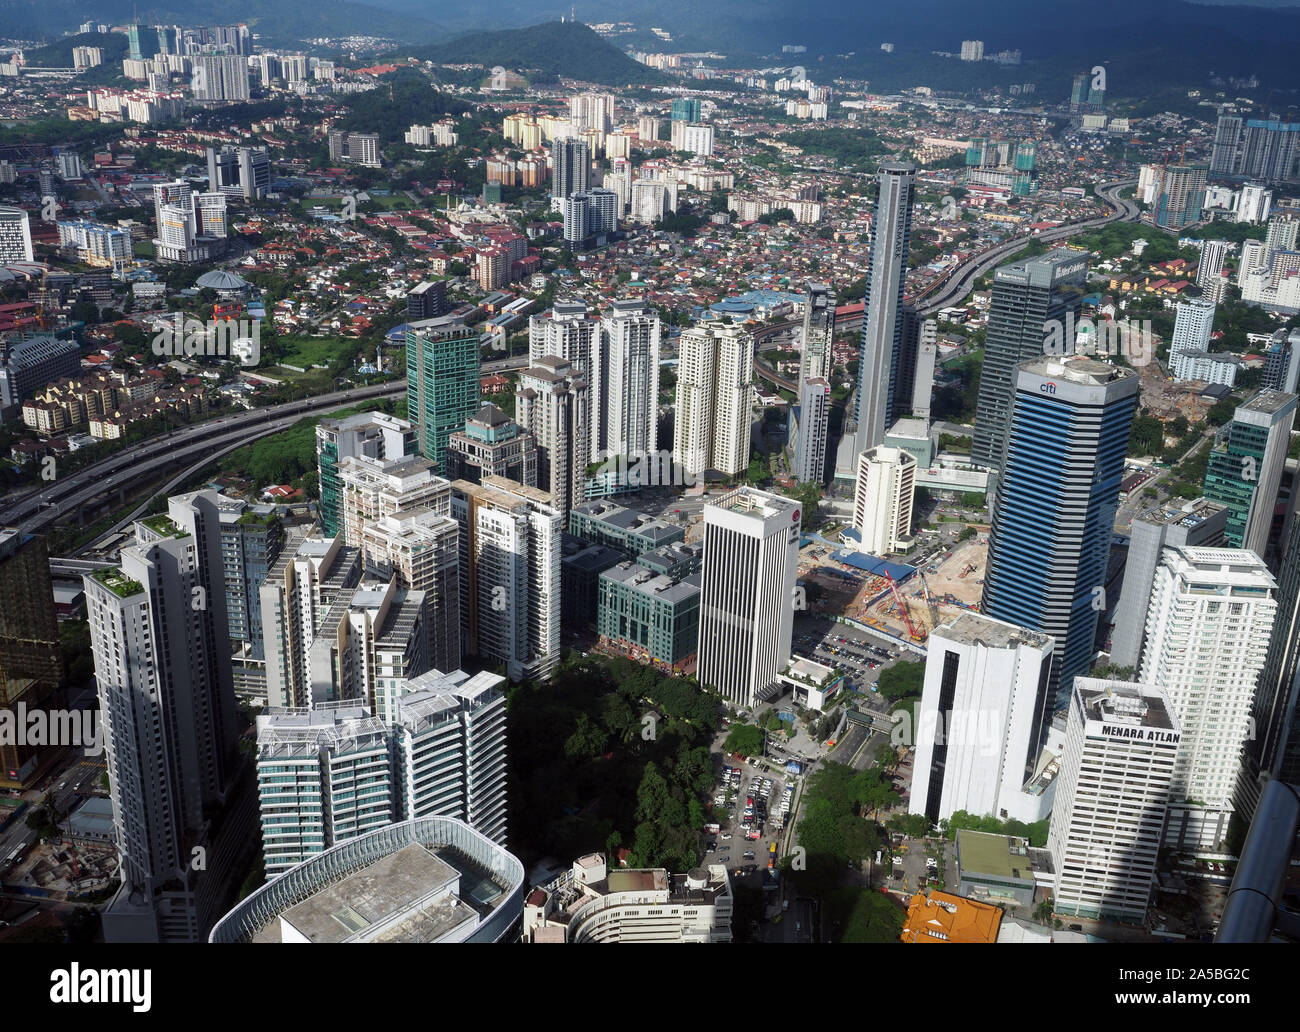 La ciudad de Kuala Lumpur, viejos y nuevos edificios en Kuala Lumpur, Malasia Foto de stock